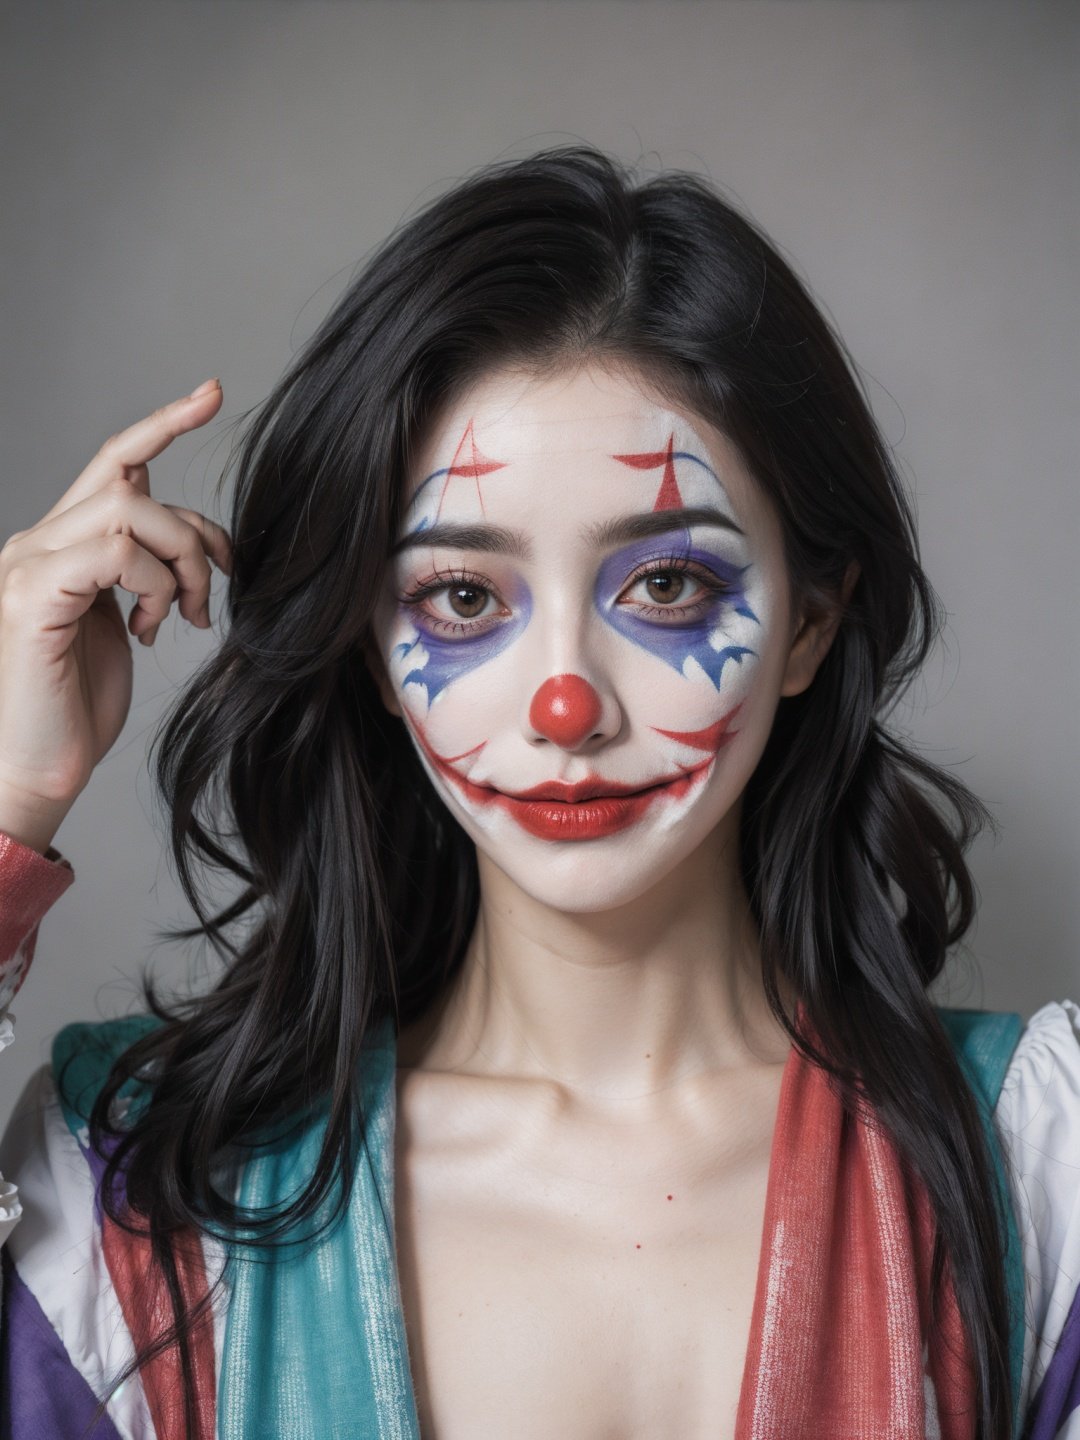 1girl,moyou,portrait,clown,(joker makeup:1.1),(clown paintings:1.2),